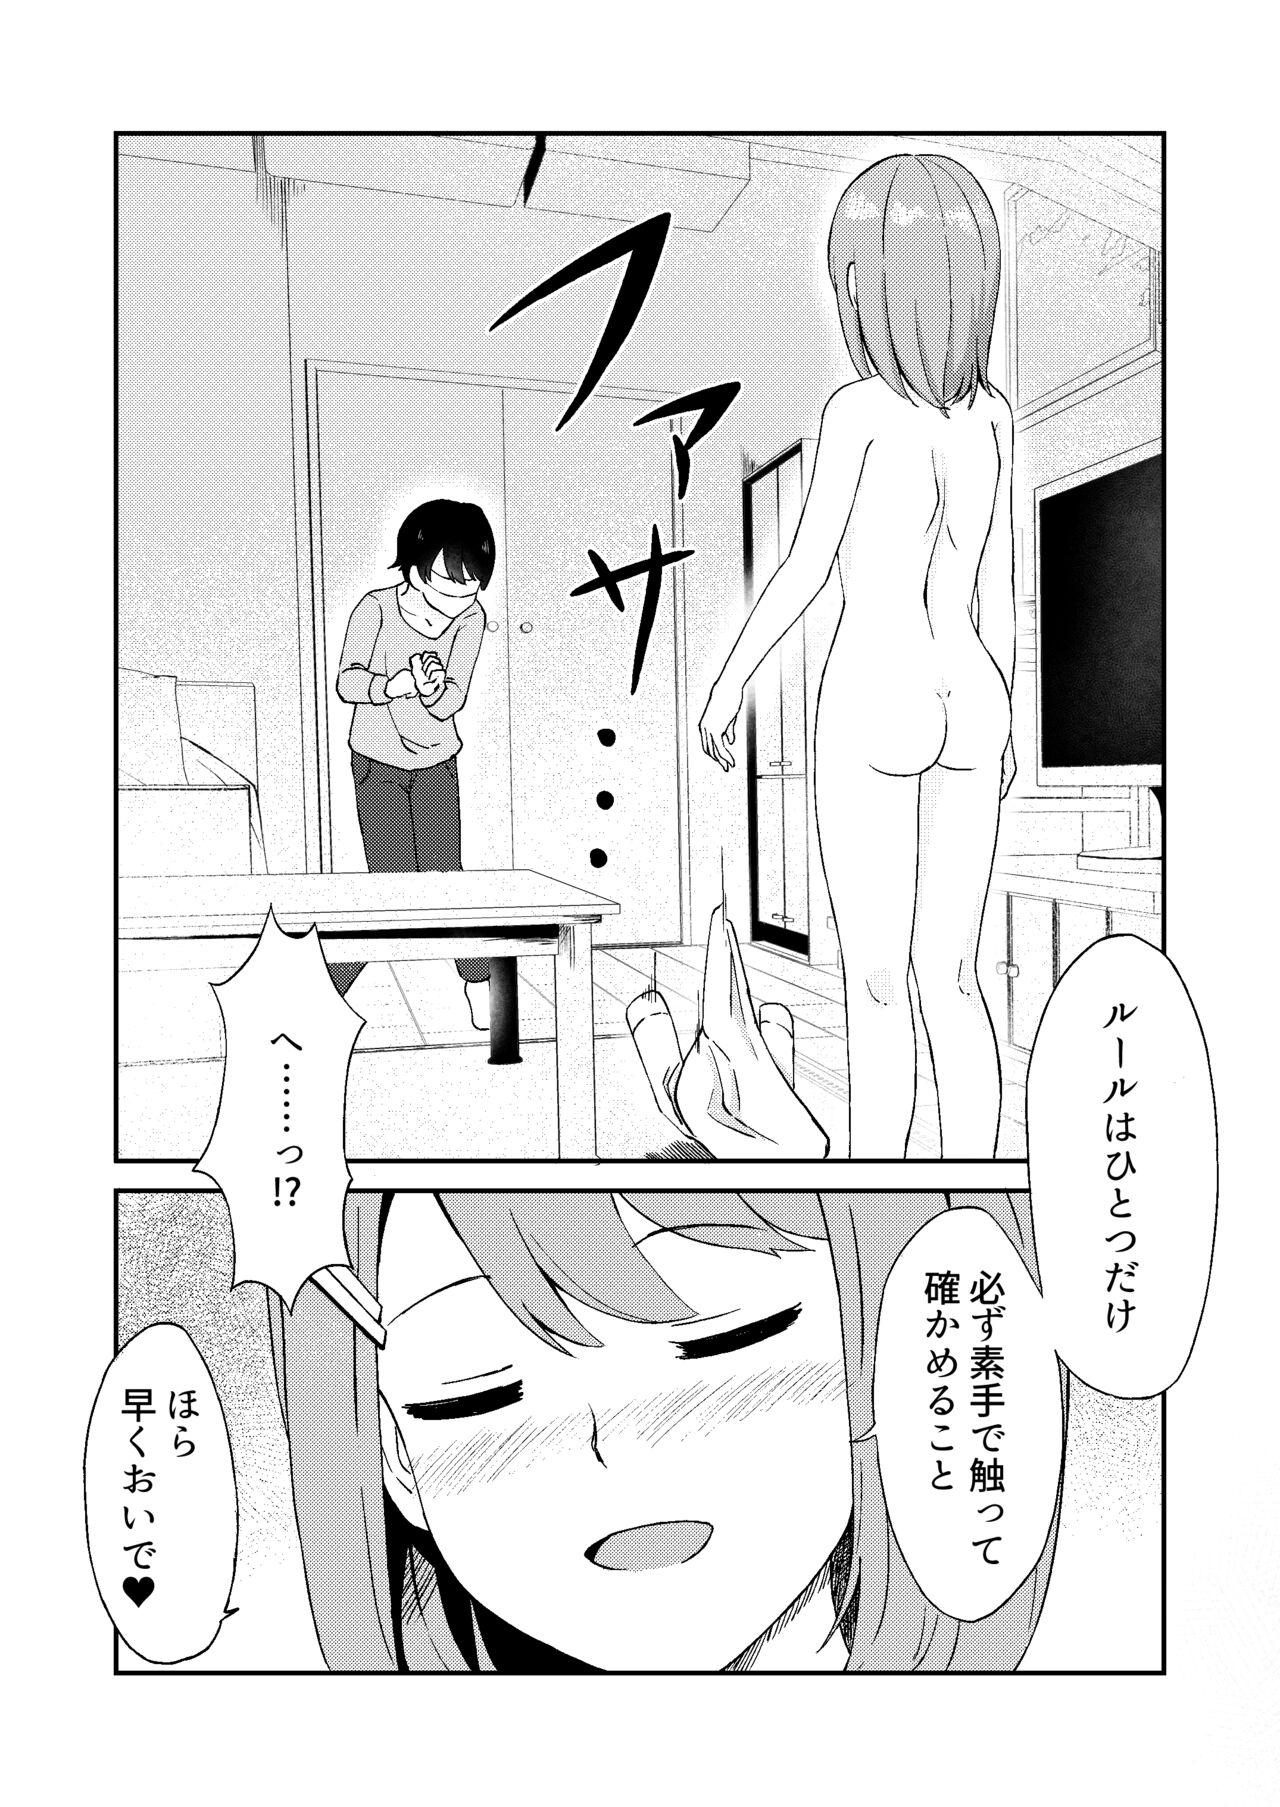 Strap On Kimi ga Mienakutatte - Original Dorm - Page 11